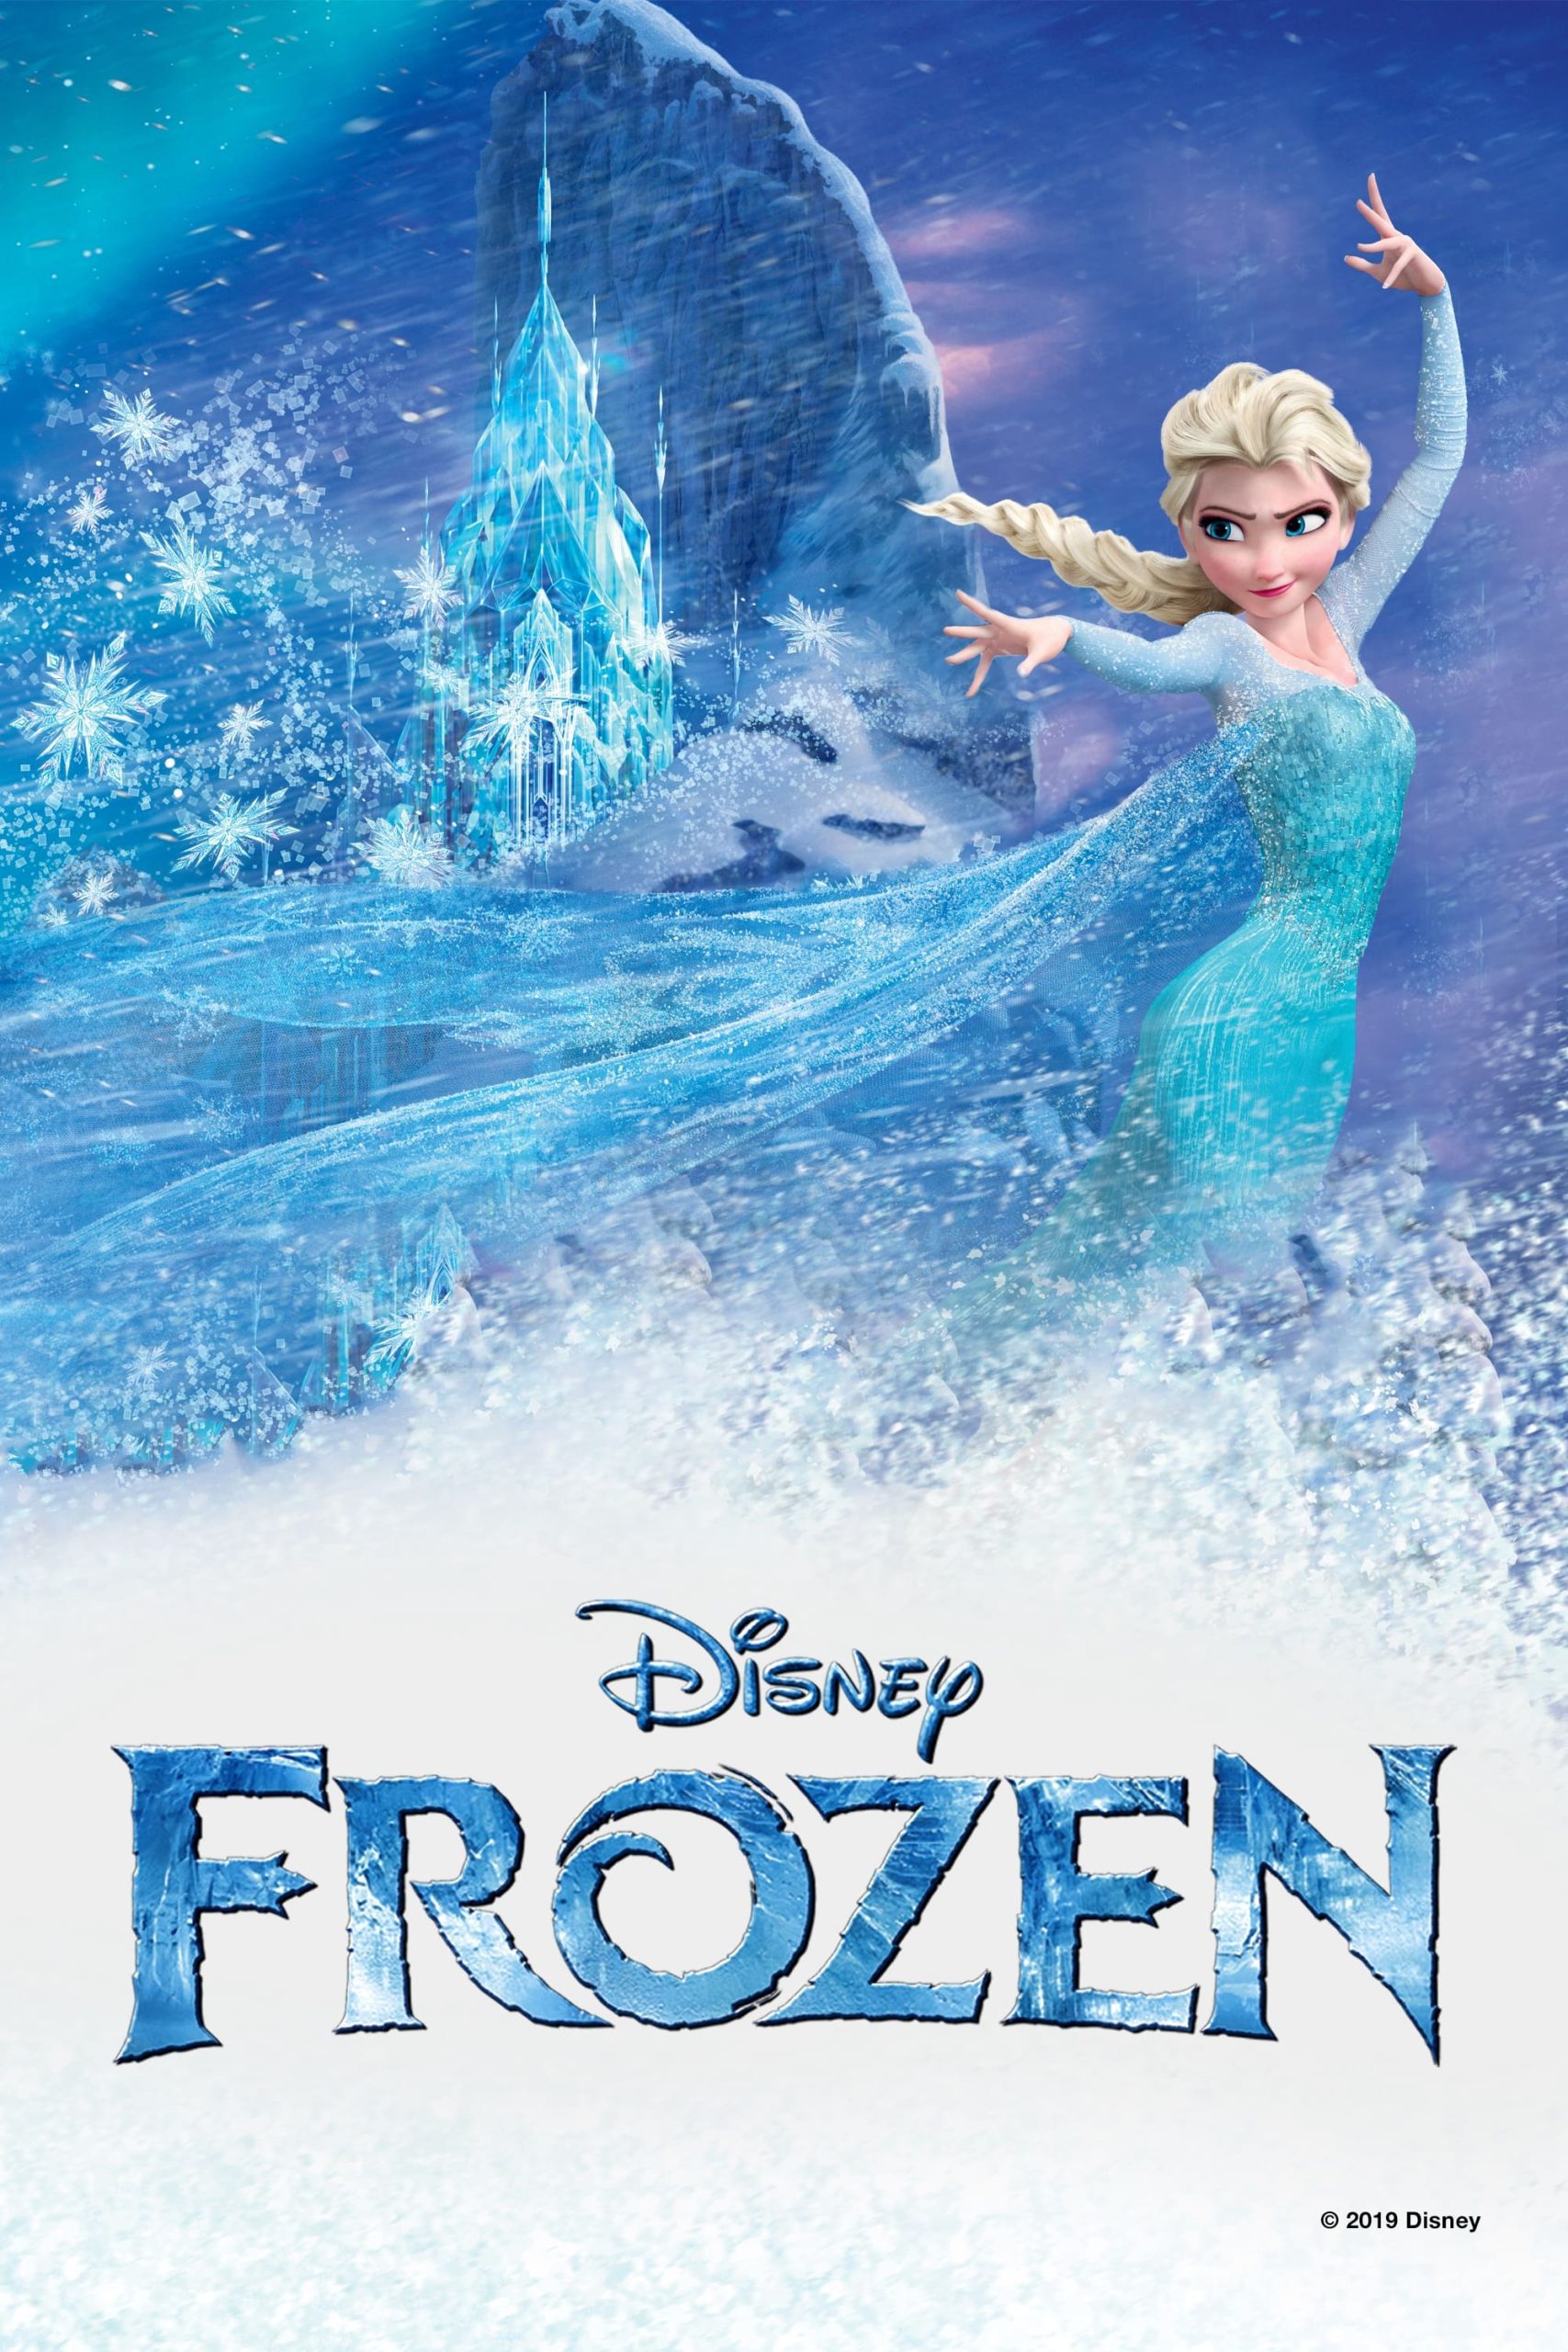 ดูหนังออนไลน์ฟรี Frozen ผจญภัยแดนคำสาปราชินีหิมะ